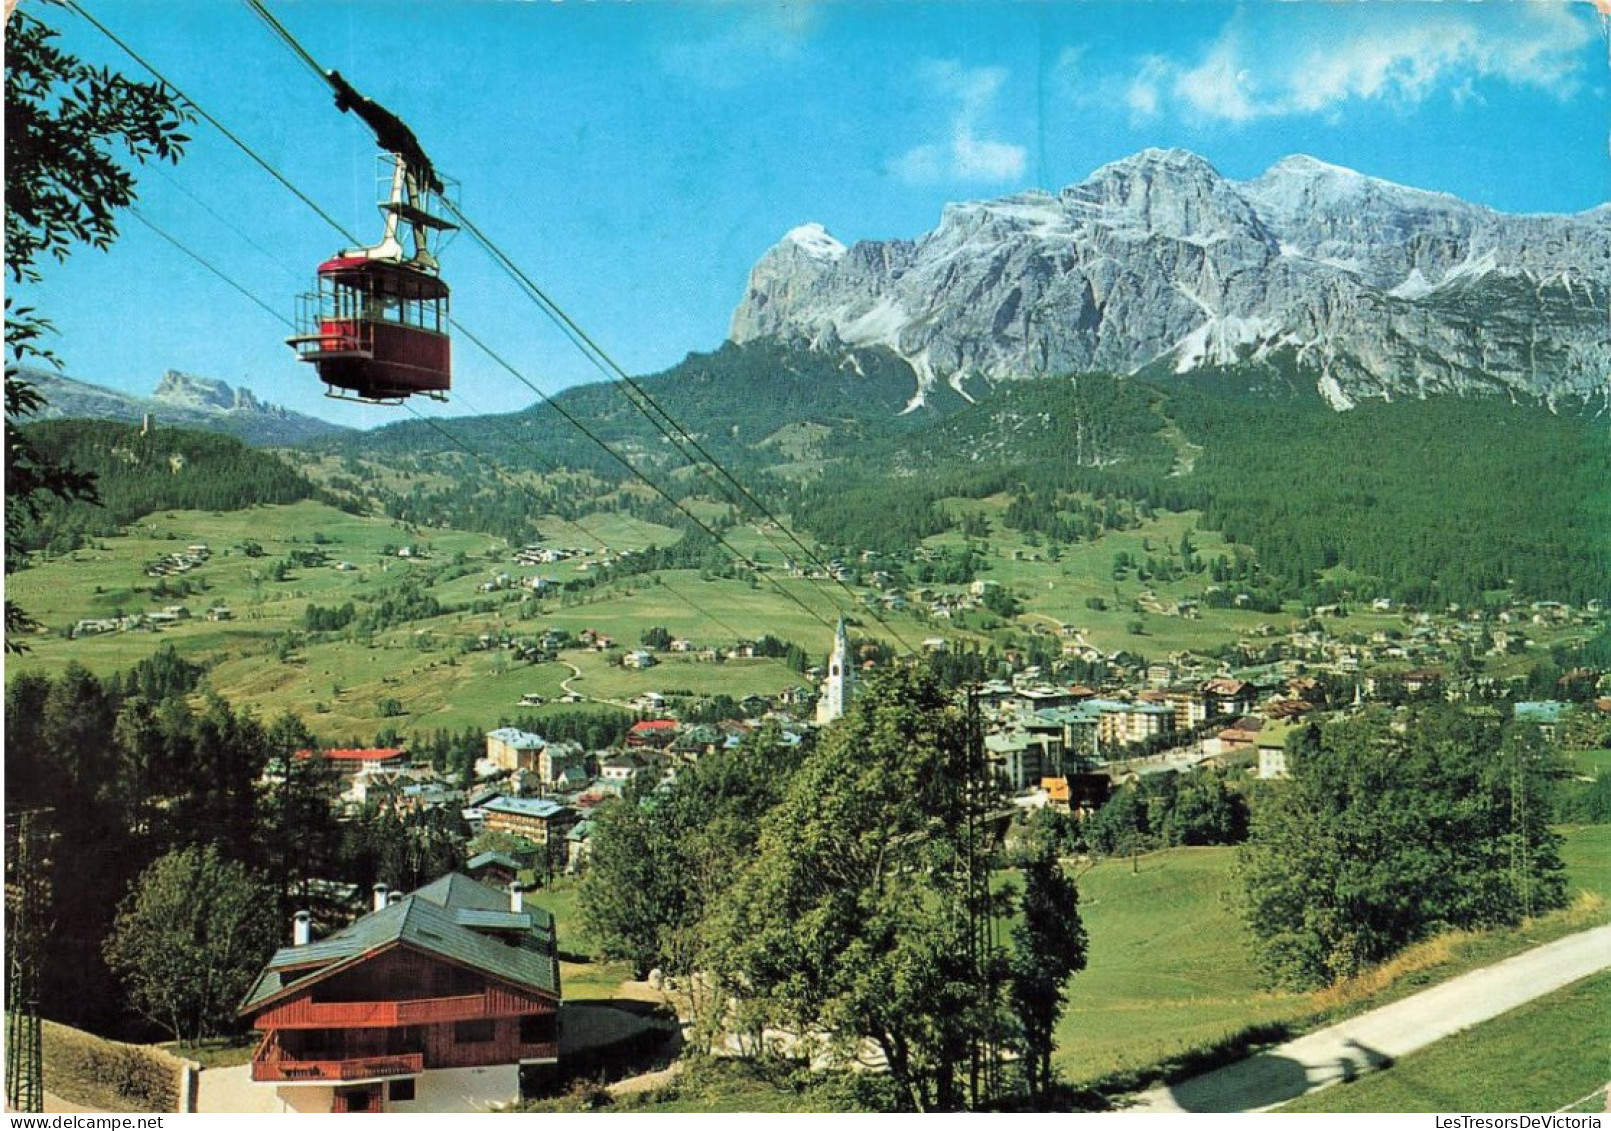 ITALIE - Dolomiti - Cortina M 1224 - Funivia Cortina - Faloria M 1224 2120 Verso Le Tofane - Carte Postale Ancienne - Belluno